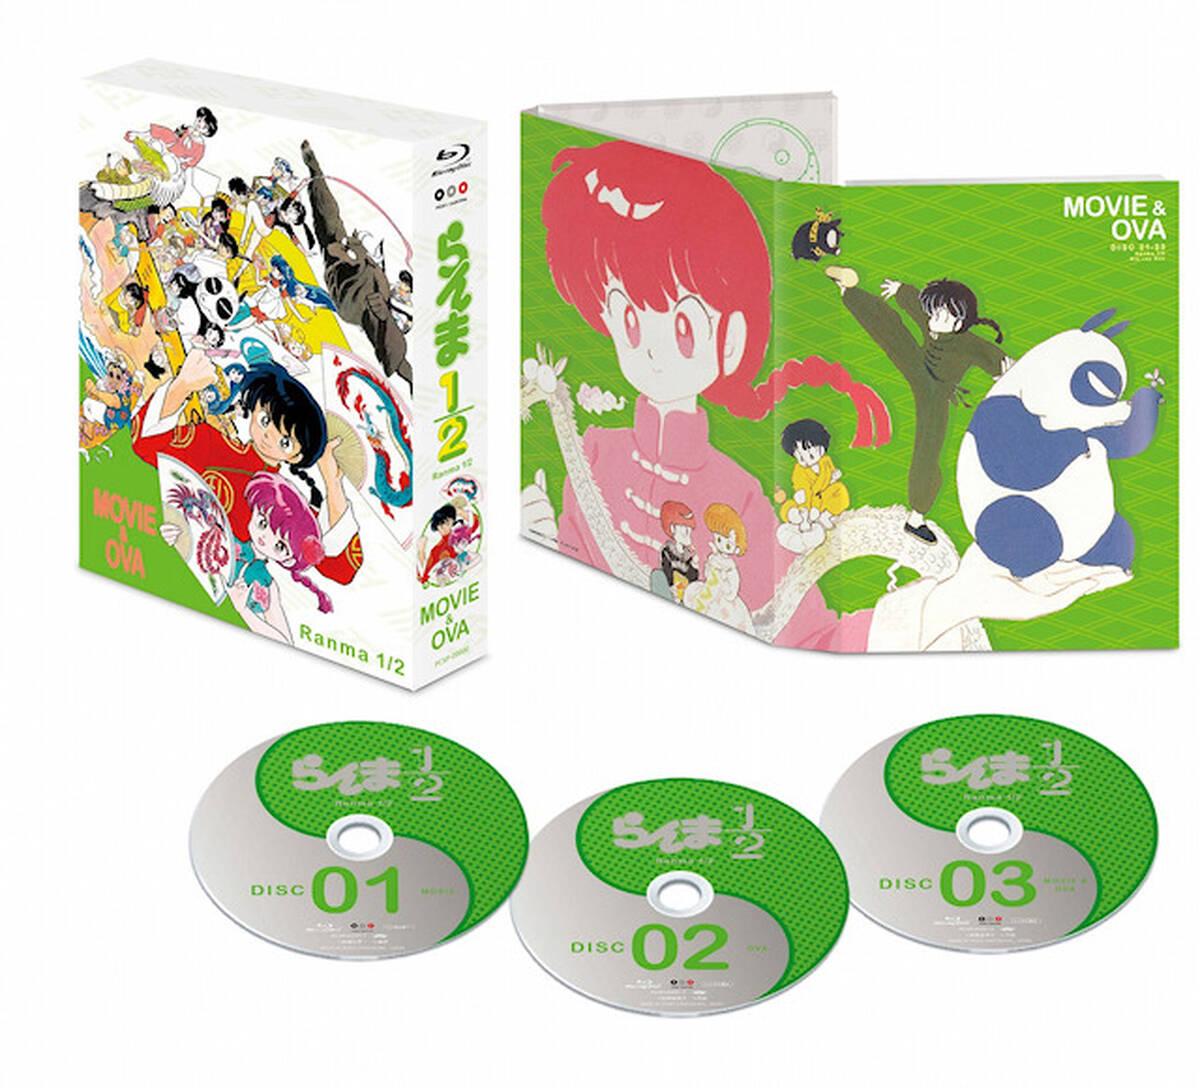 名作アニメ らんま1 2 劇場版3作とova11作をブルーレイ化 Boxとして8月19日に発売 アキバ総研